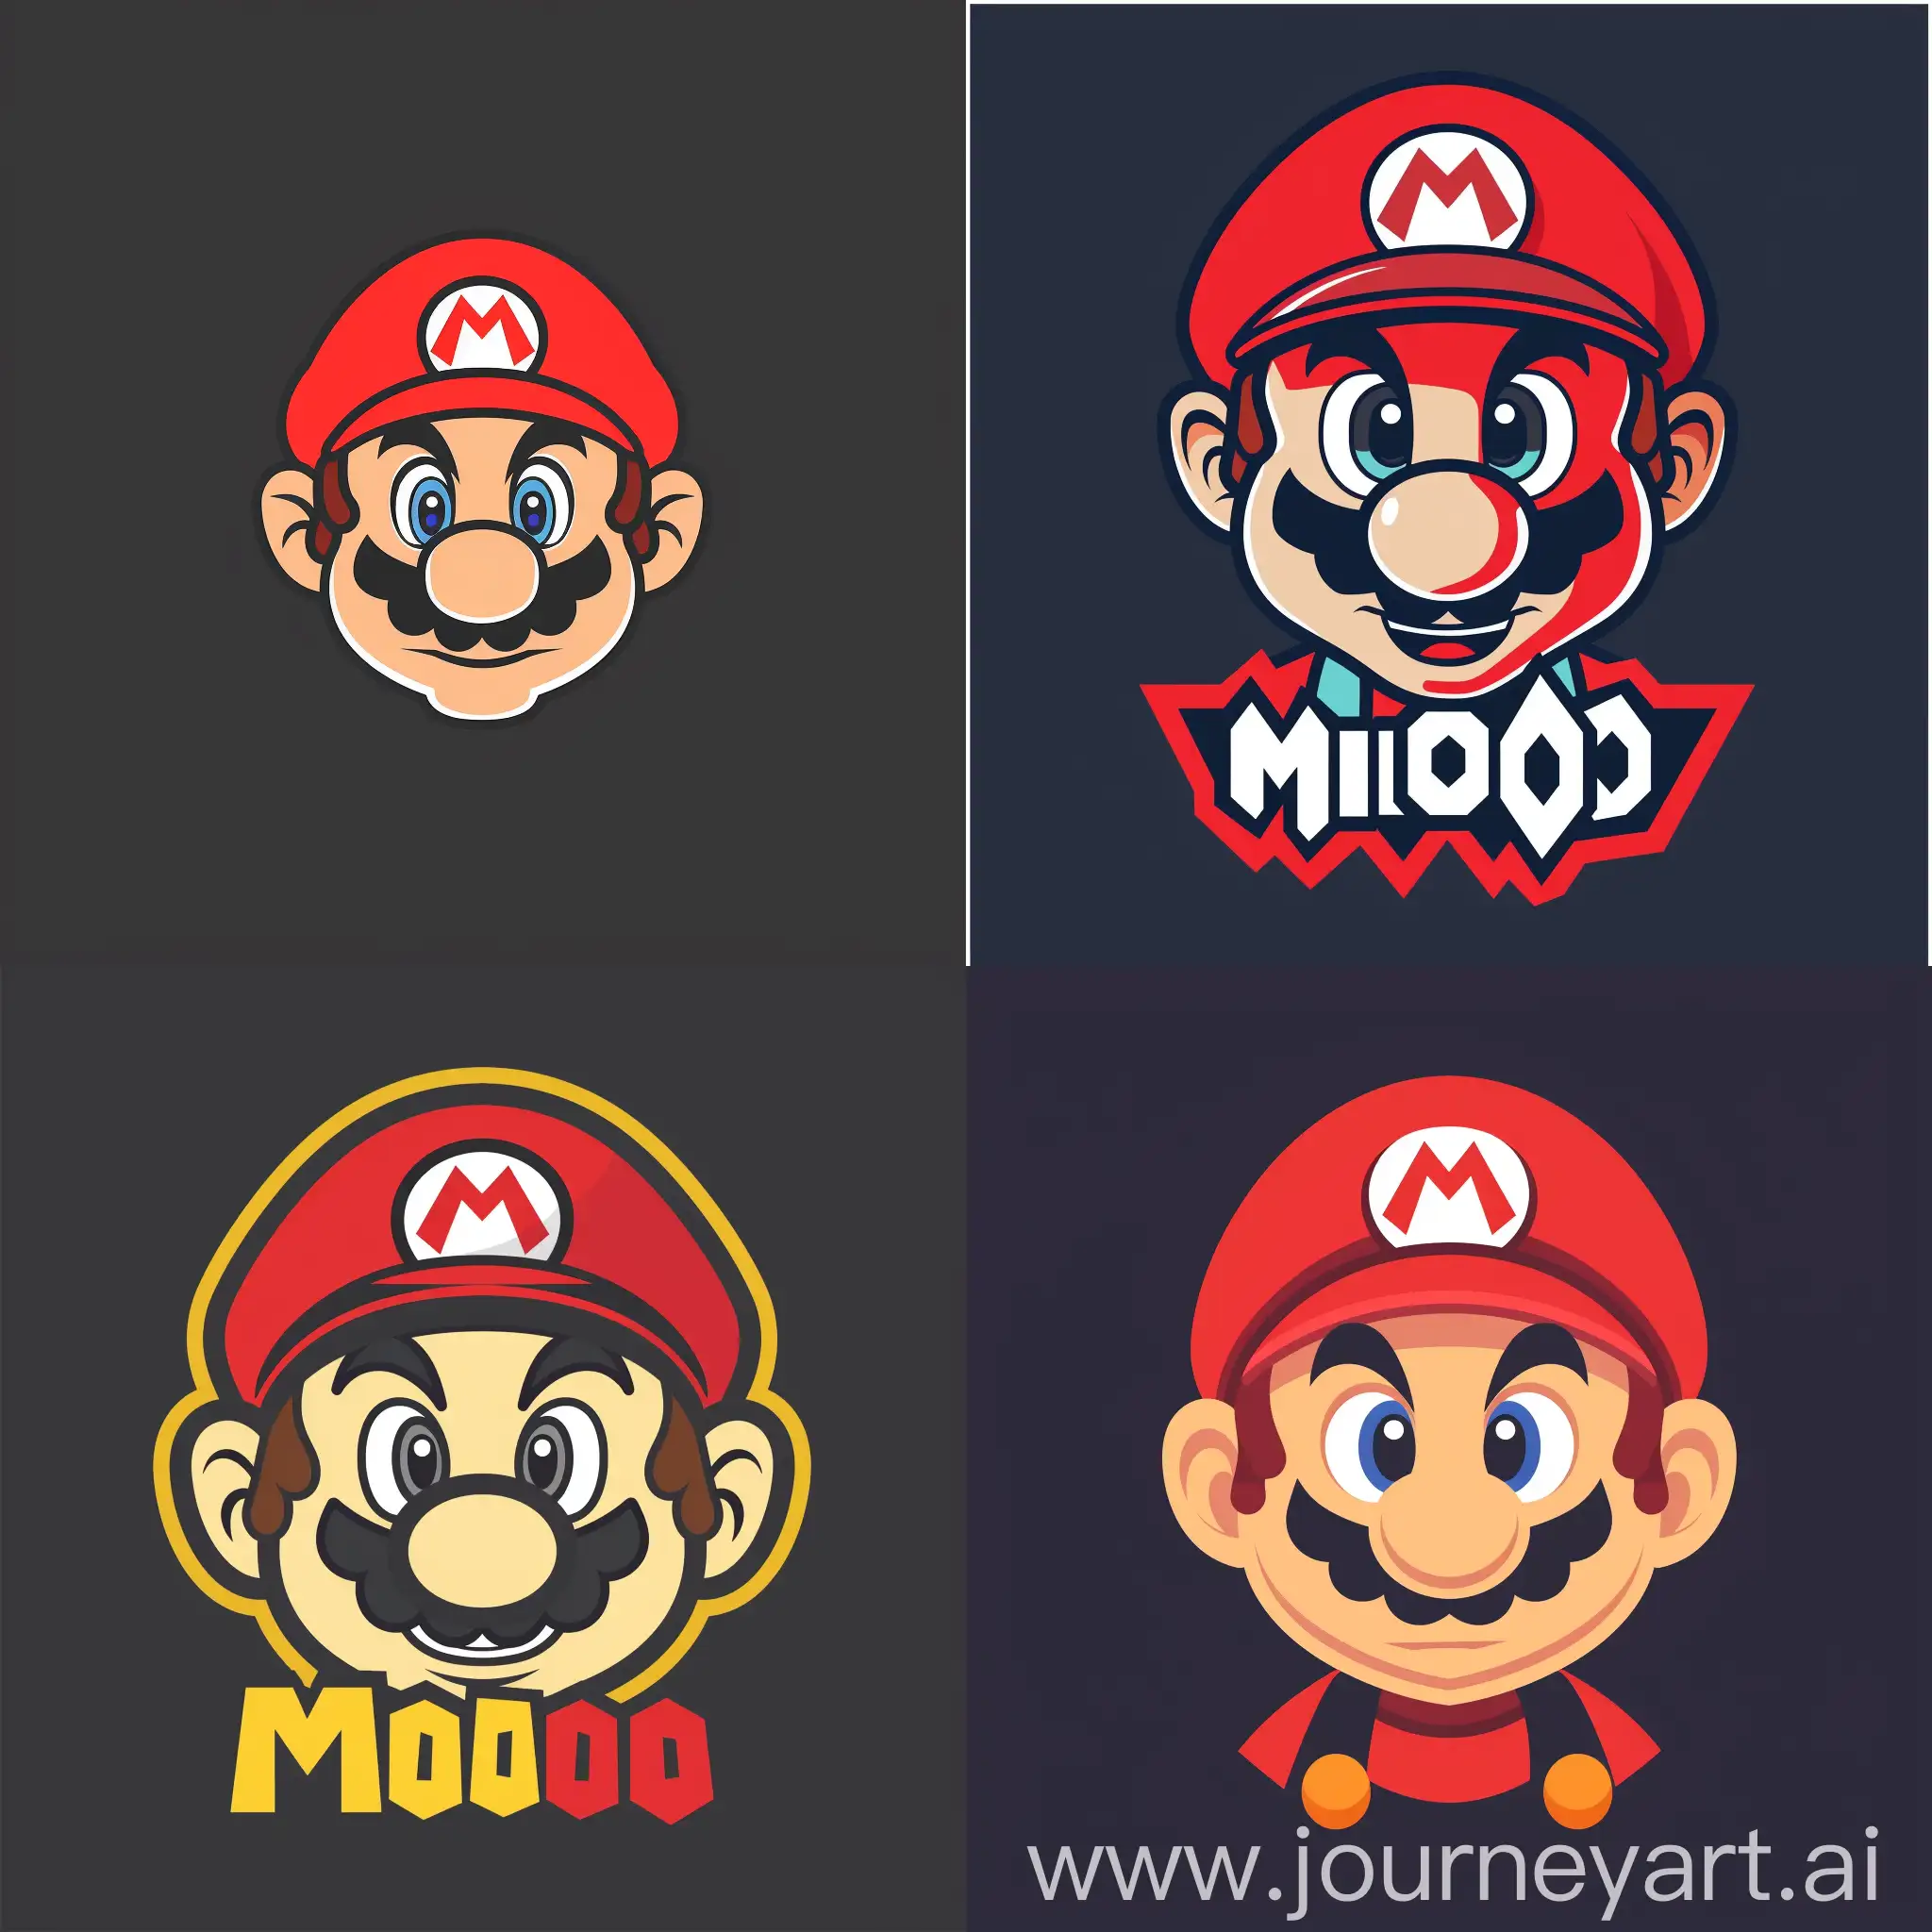 Логотип в стиле марио для программы тестирования ПО "Mario" он должен быть супер минималистичным и в то же время стильным и современным